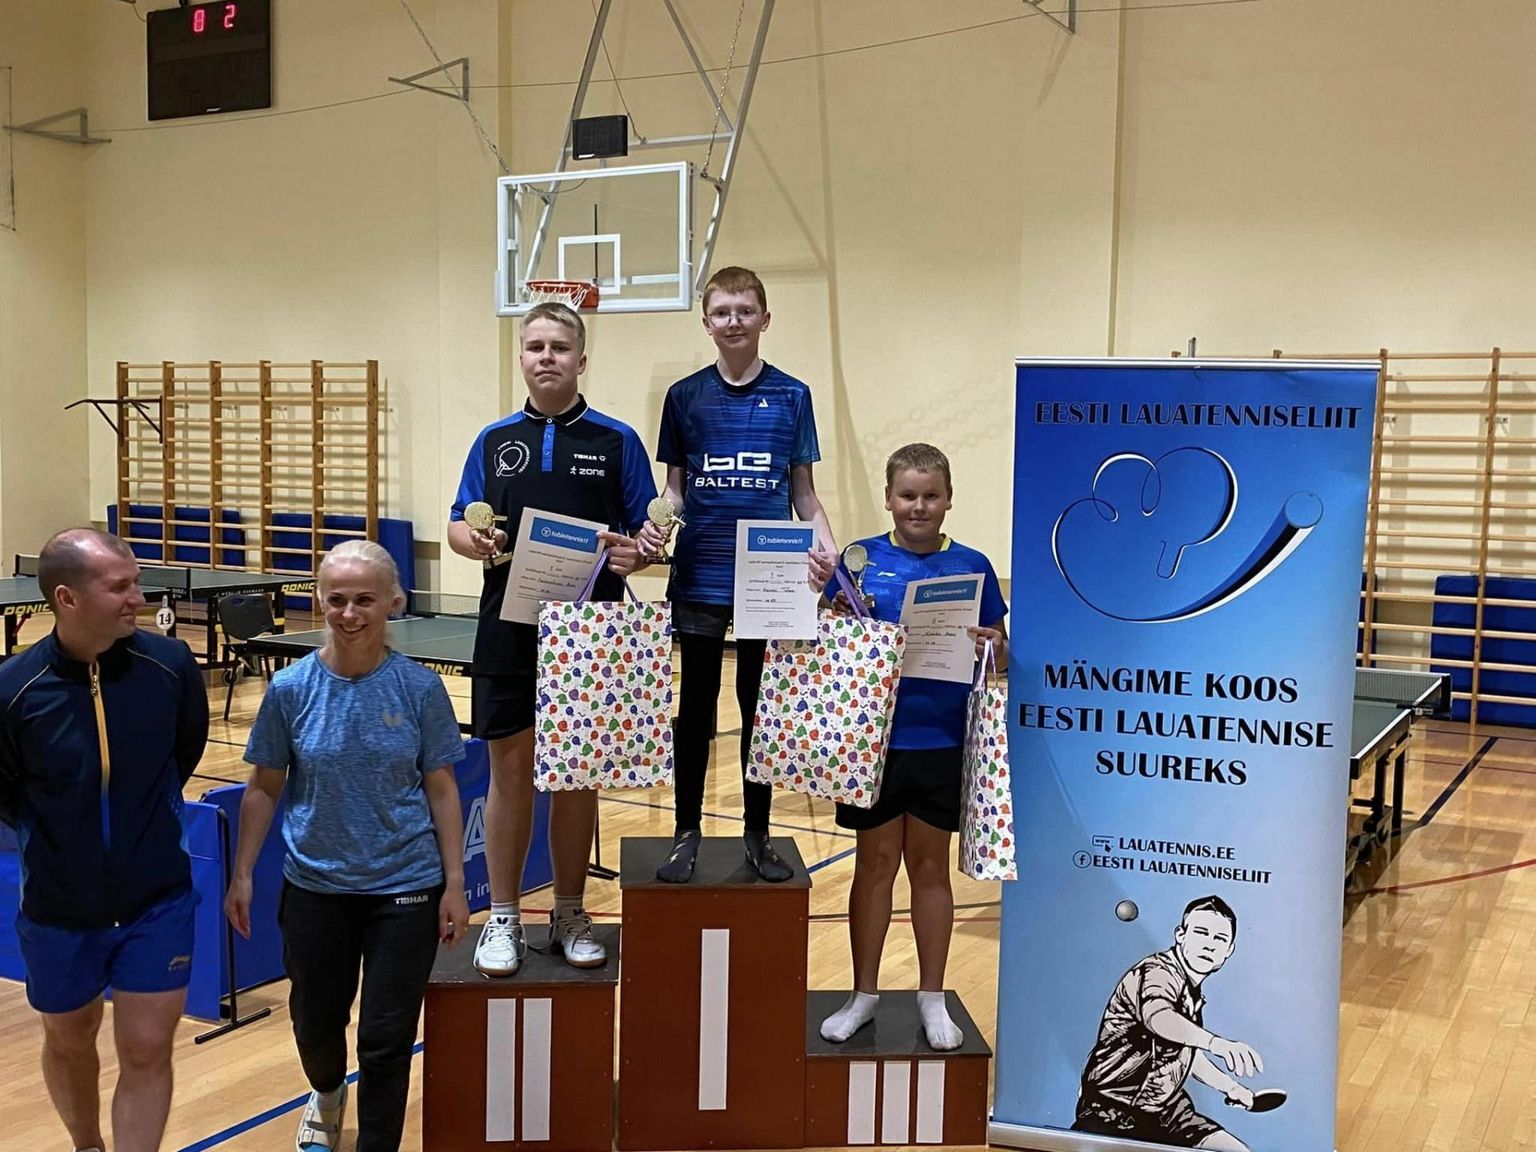 Henri Türk võitis Eesti lauatenniseliidu laste grand prix’ turniiril M-13 vanuseklassis nii viimase etapi kui üldarvestuses. Juuni keskel on tal võimalus mõõtu võtta Euroopa sama vanuseklassi paremikuga.